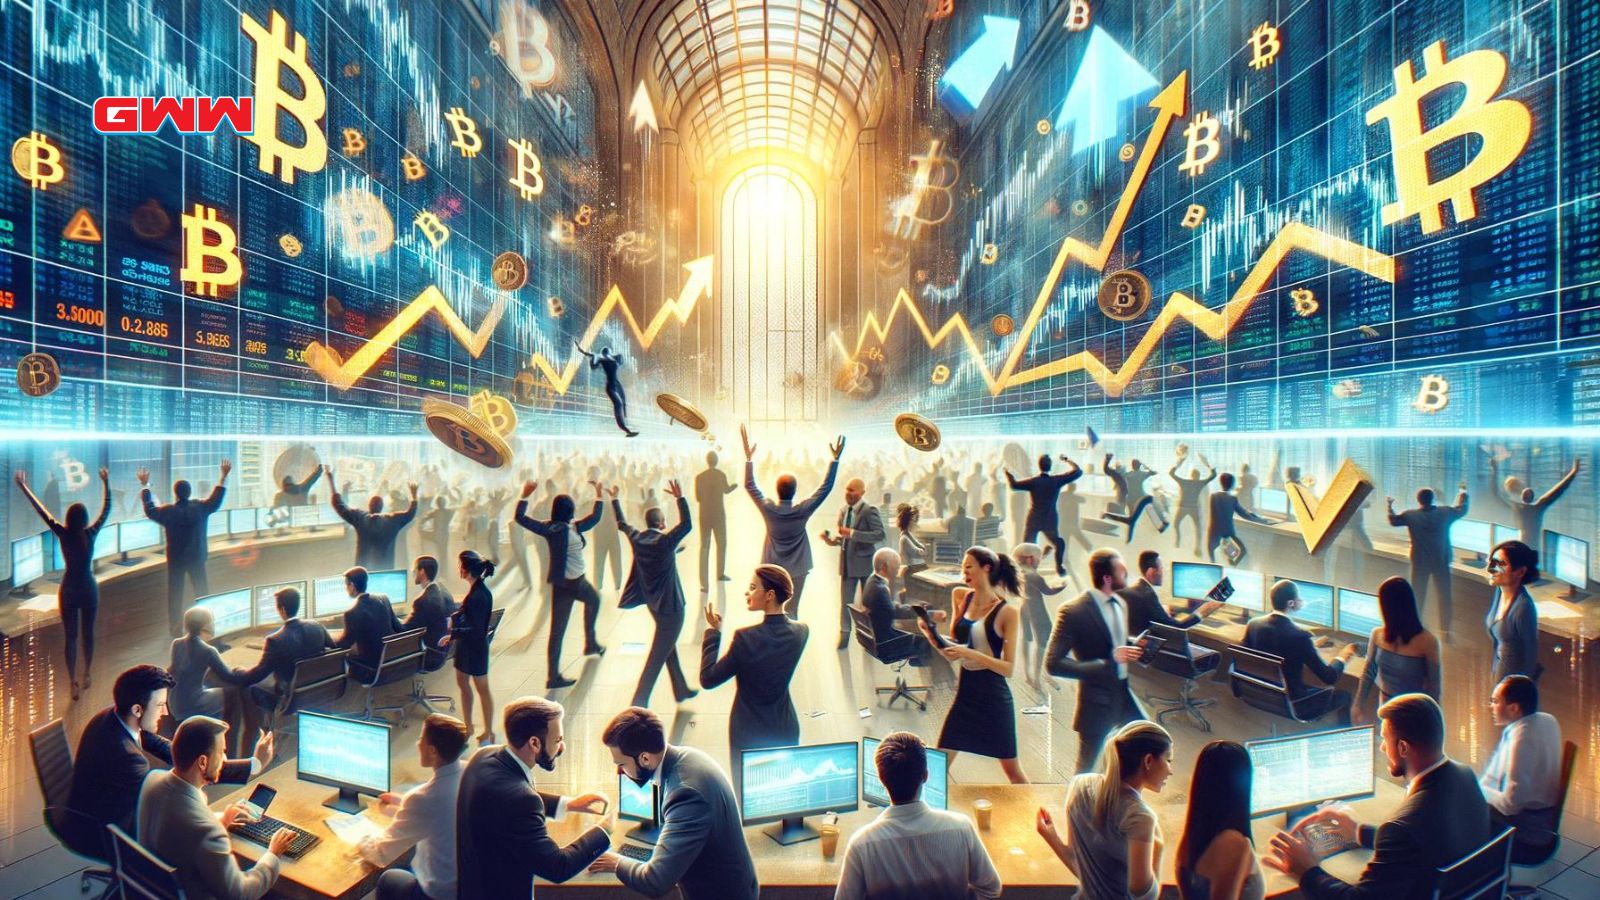 Stock market floor reacting to Bitcoin halving